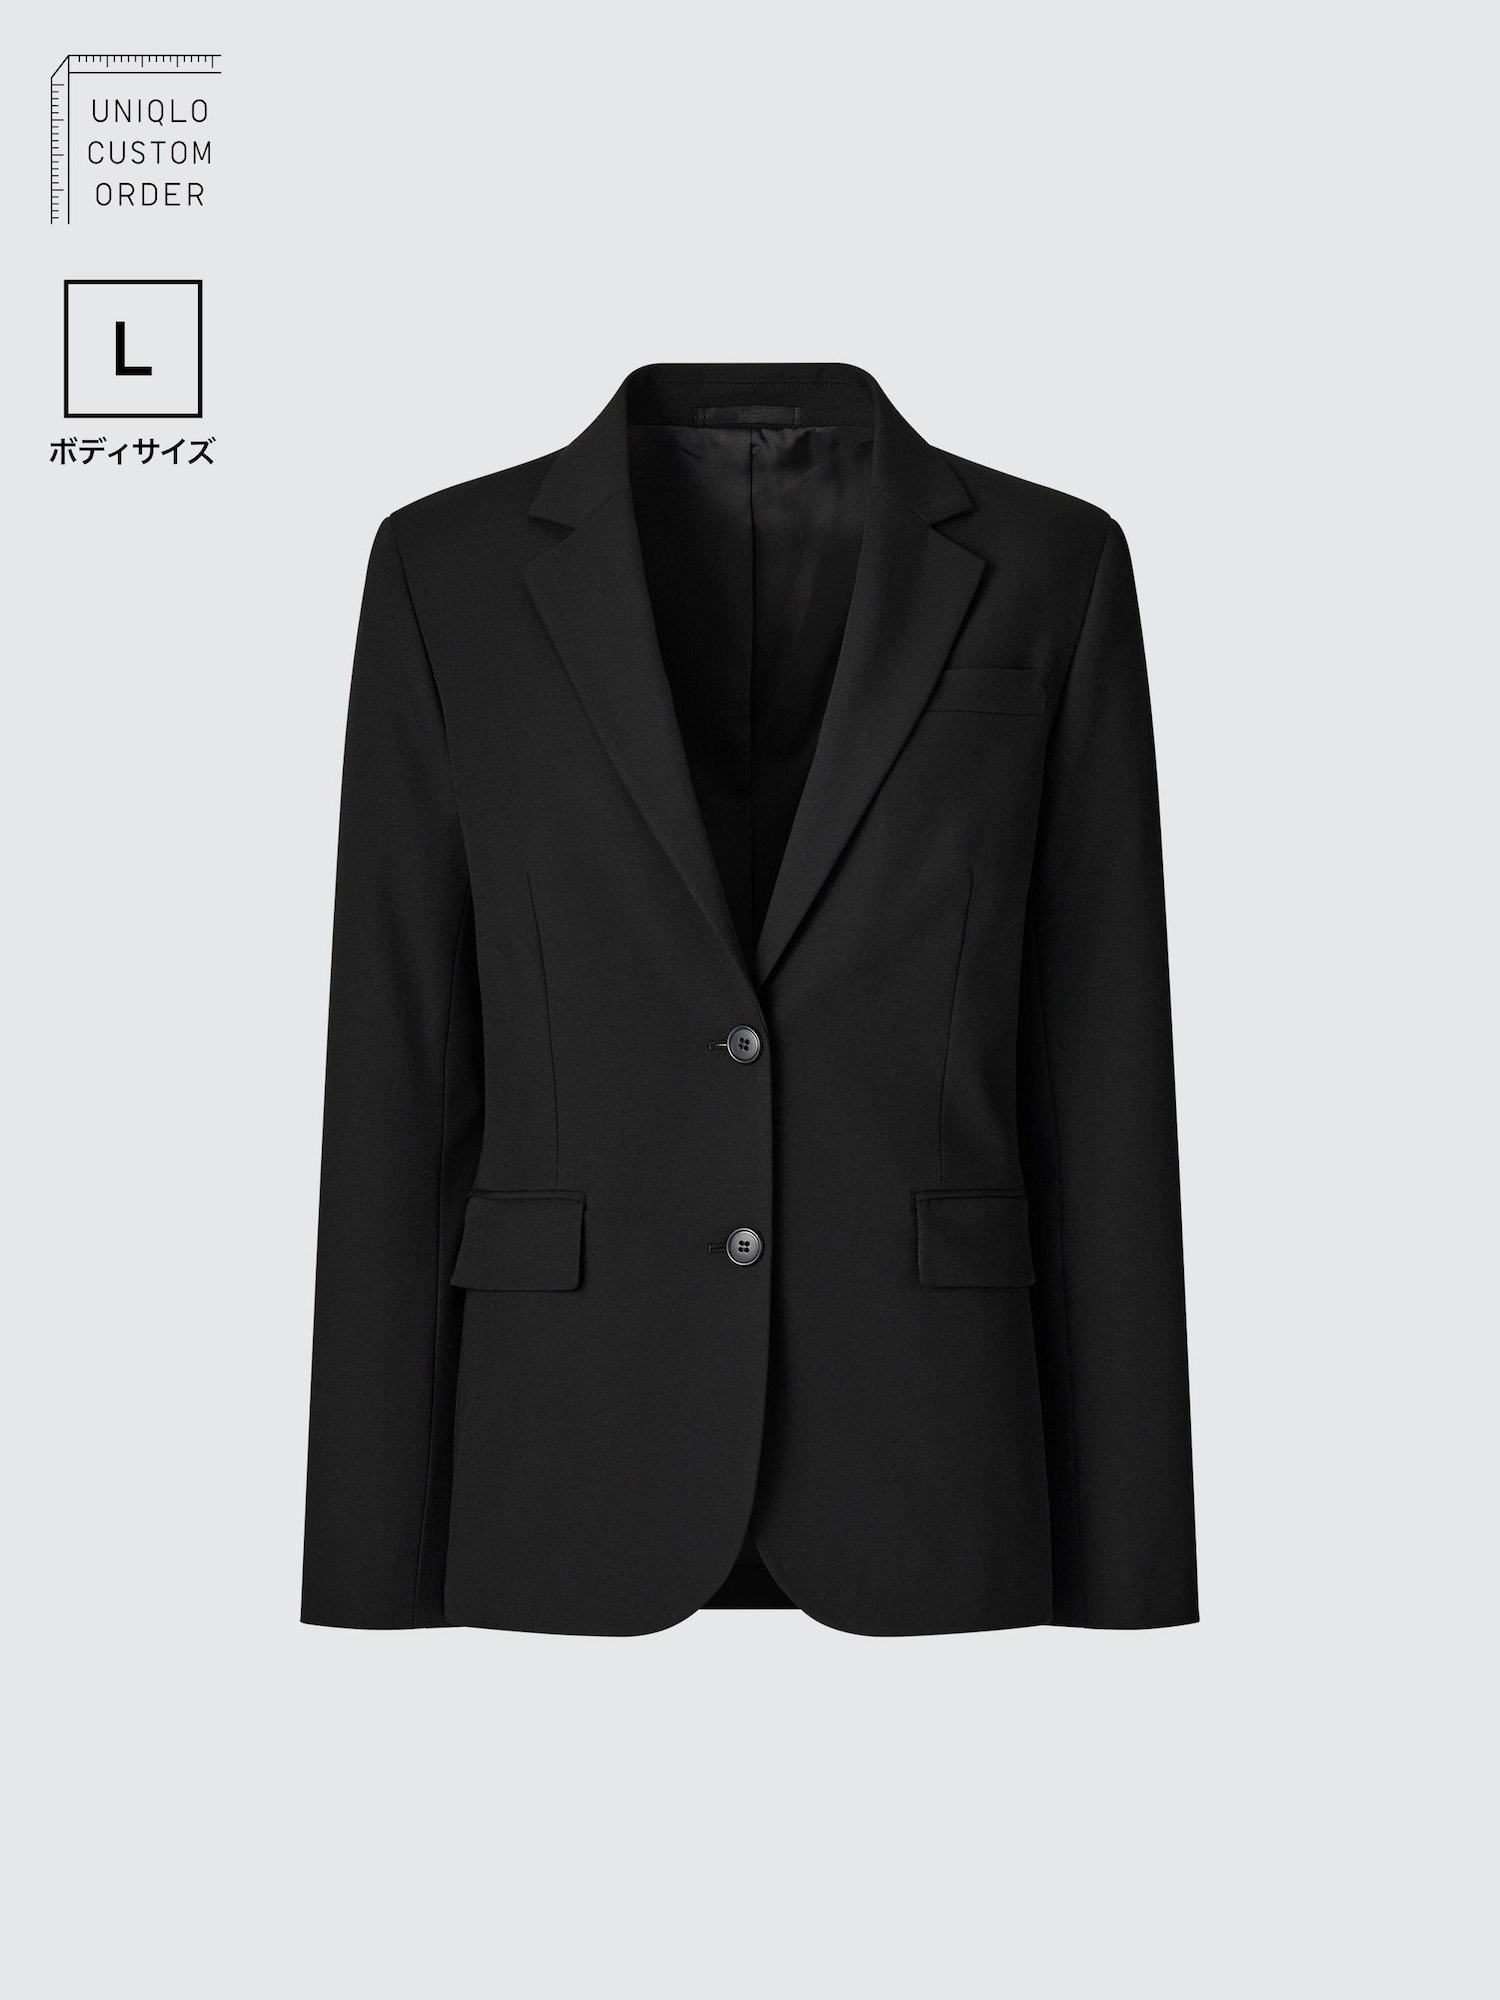 スーツ 黒 ビジネスの関連商品 | ユニクロ